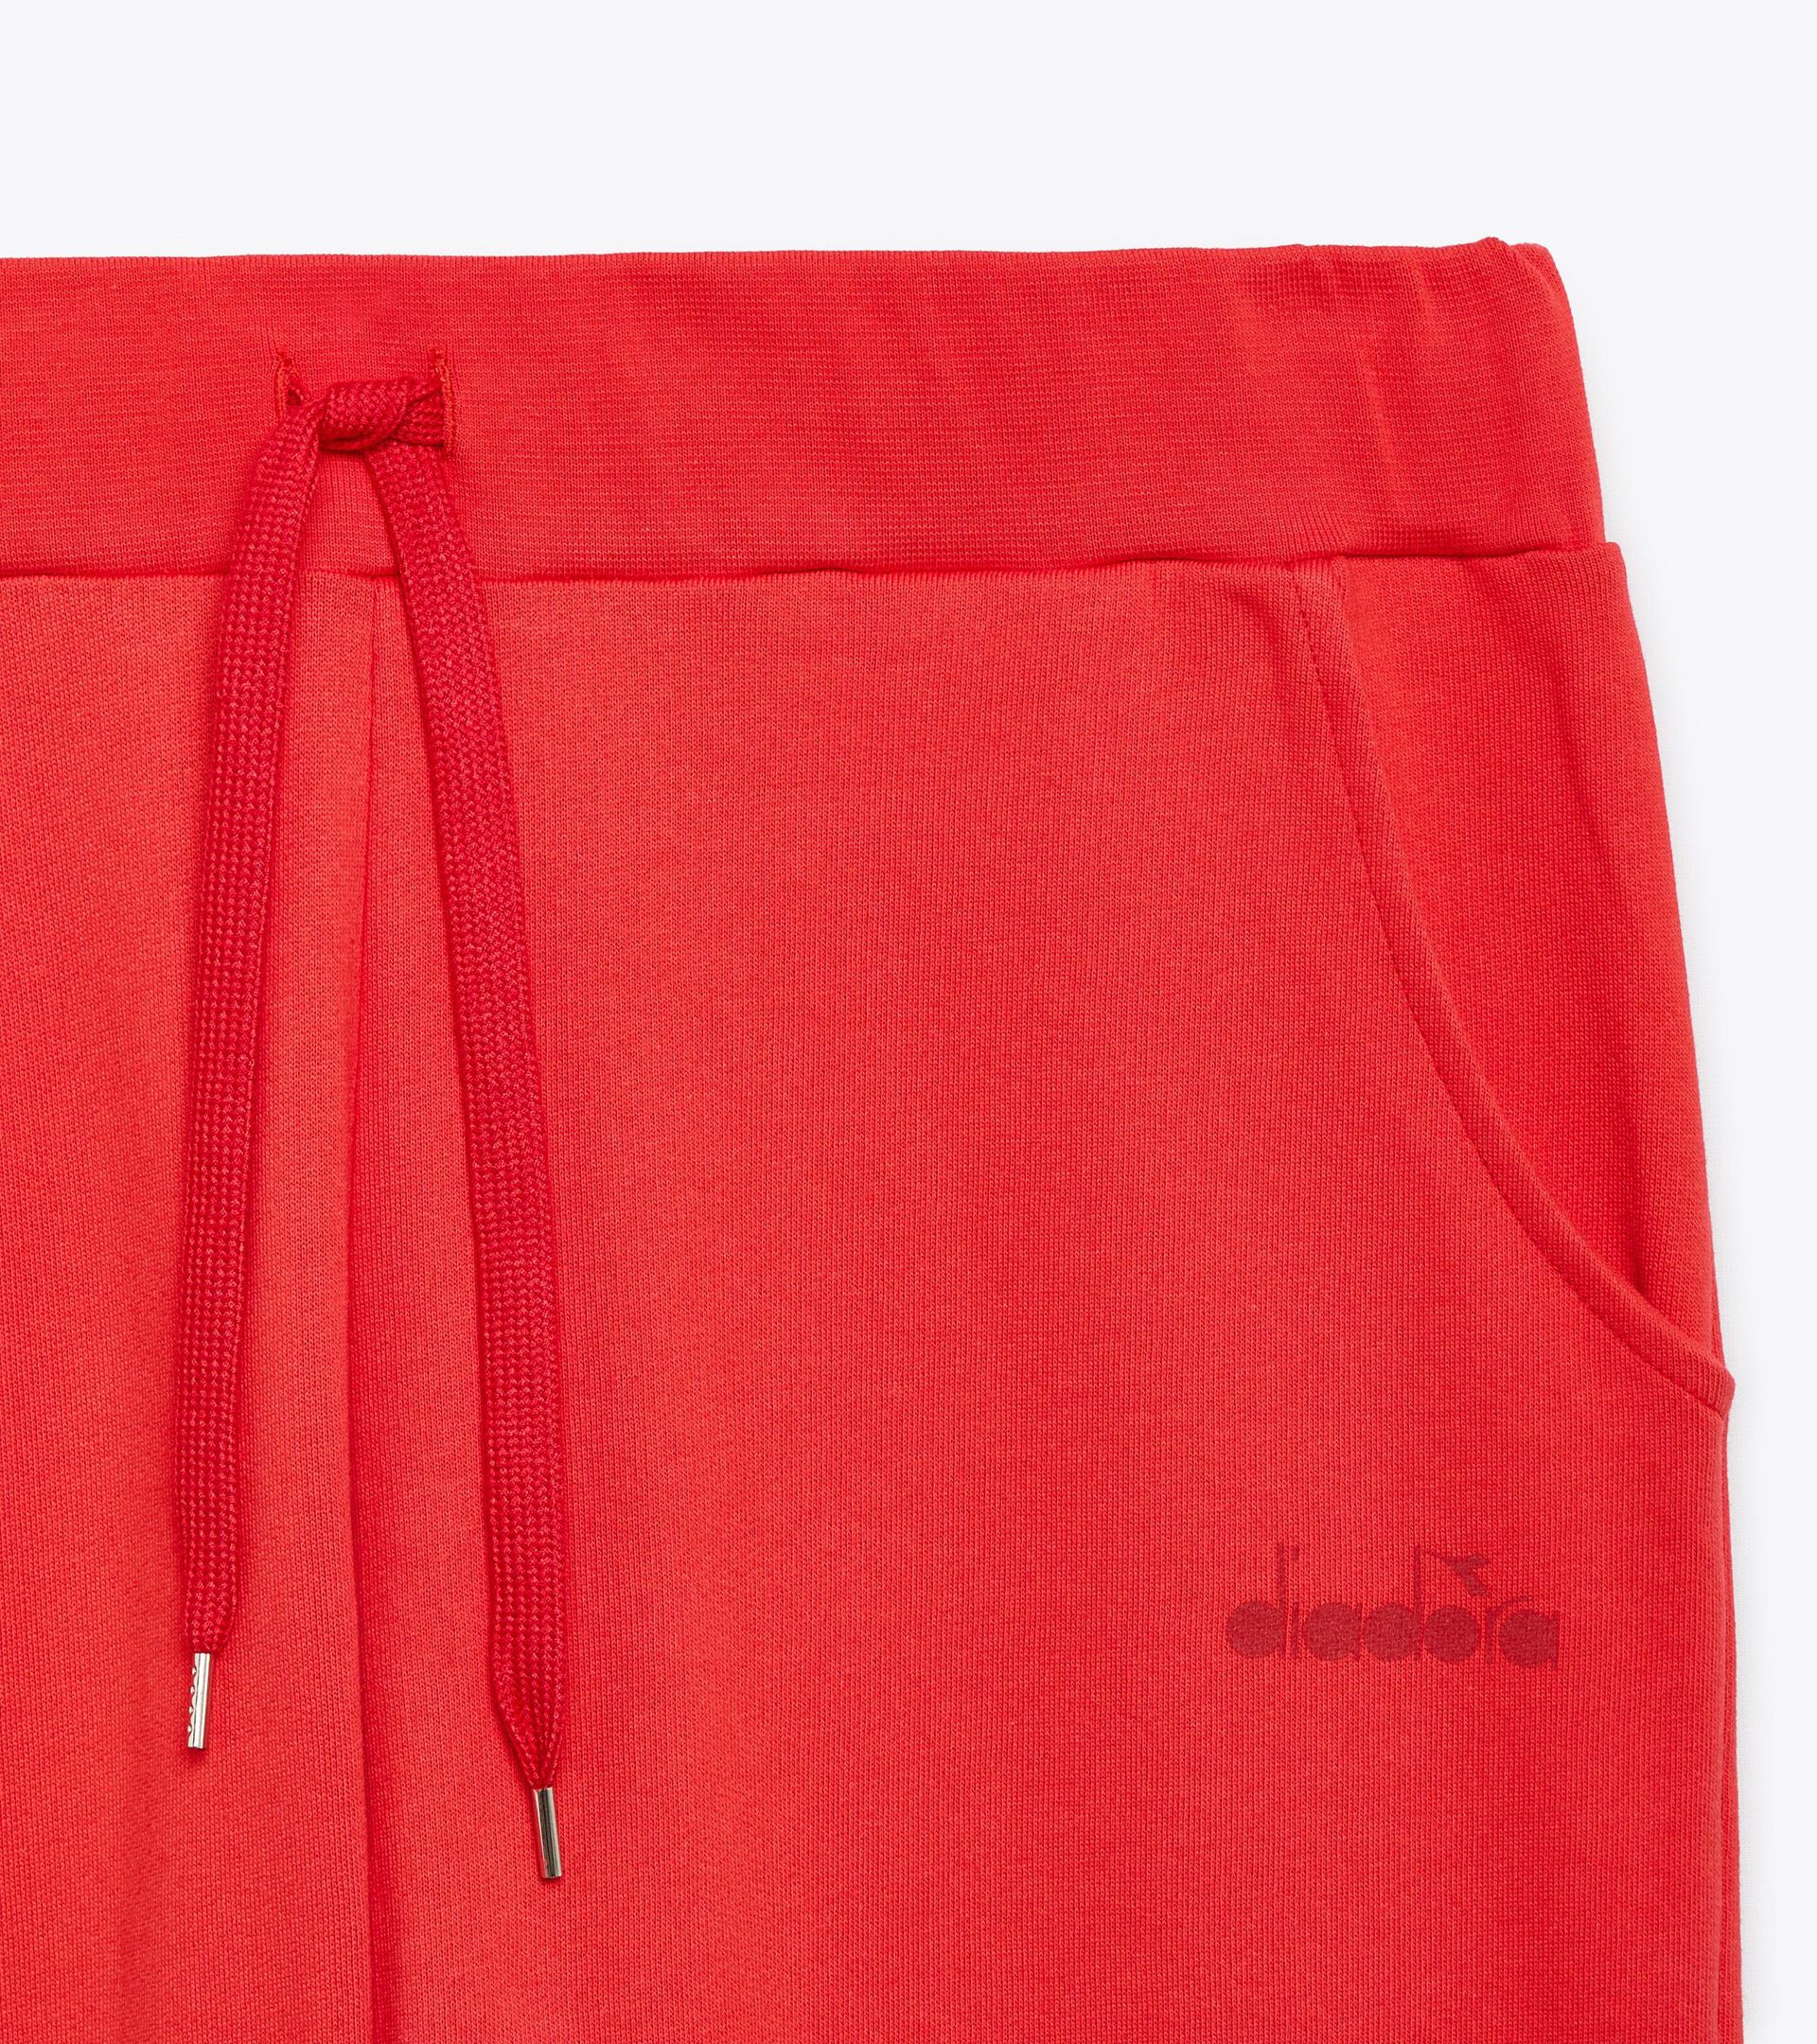 Pantalón deportivo - Made in Italy - Gender neutral PANTS LOGO ROJO SEMI AMARGO - Diadora